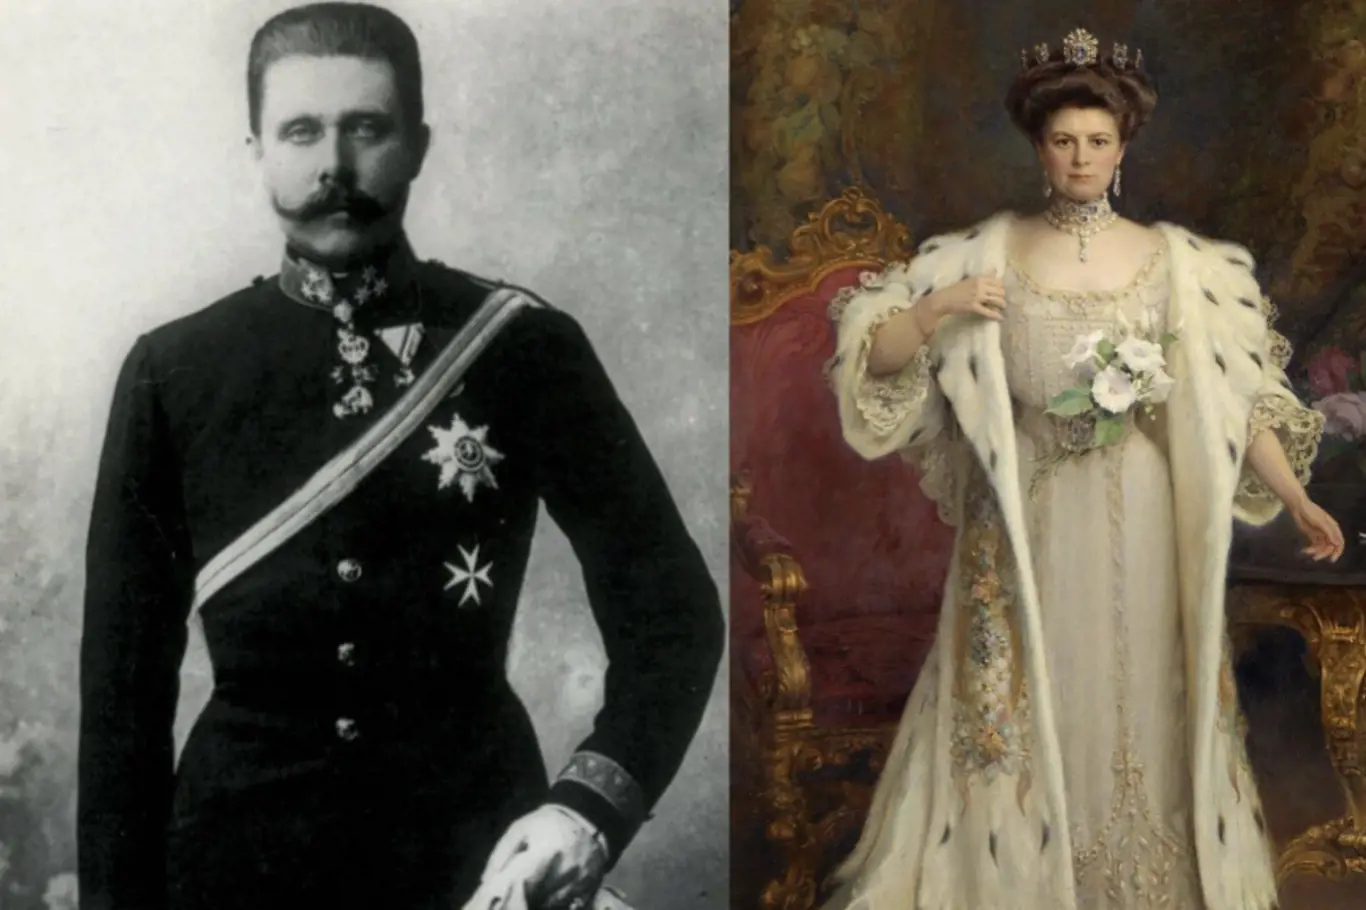 Potomci arcivévody Františka Ferdinanda d'Este a vévodkyně Žofie Chotkové z rodu Hohenbergů se museli vyrovnat s krutým osudem